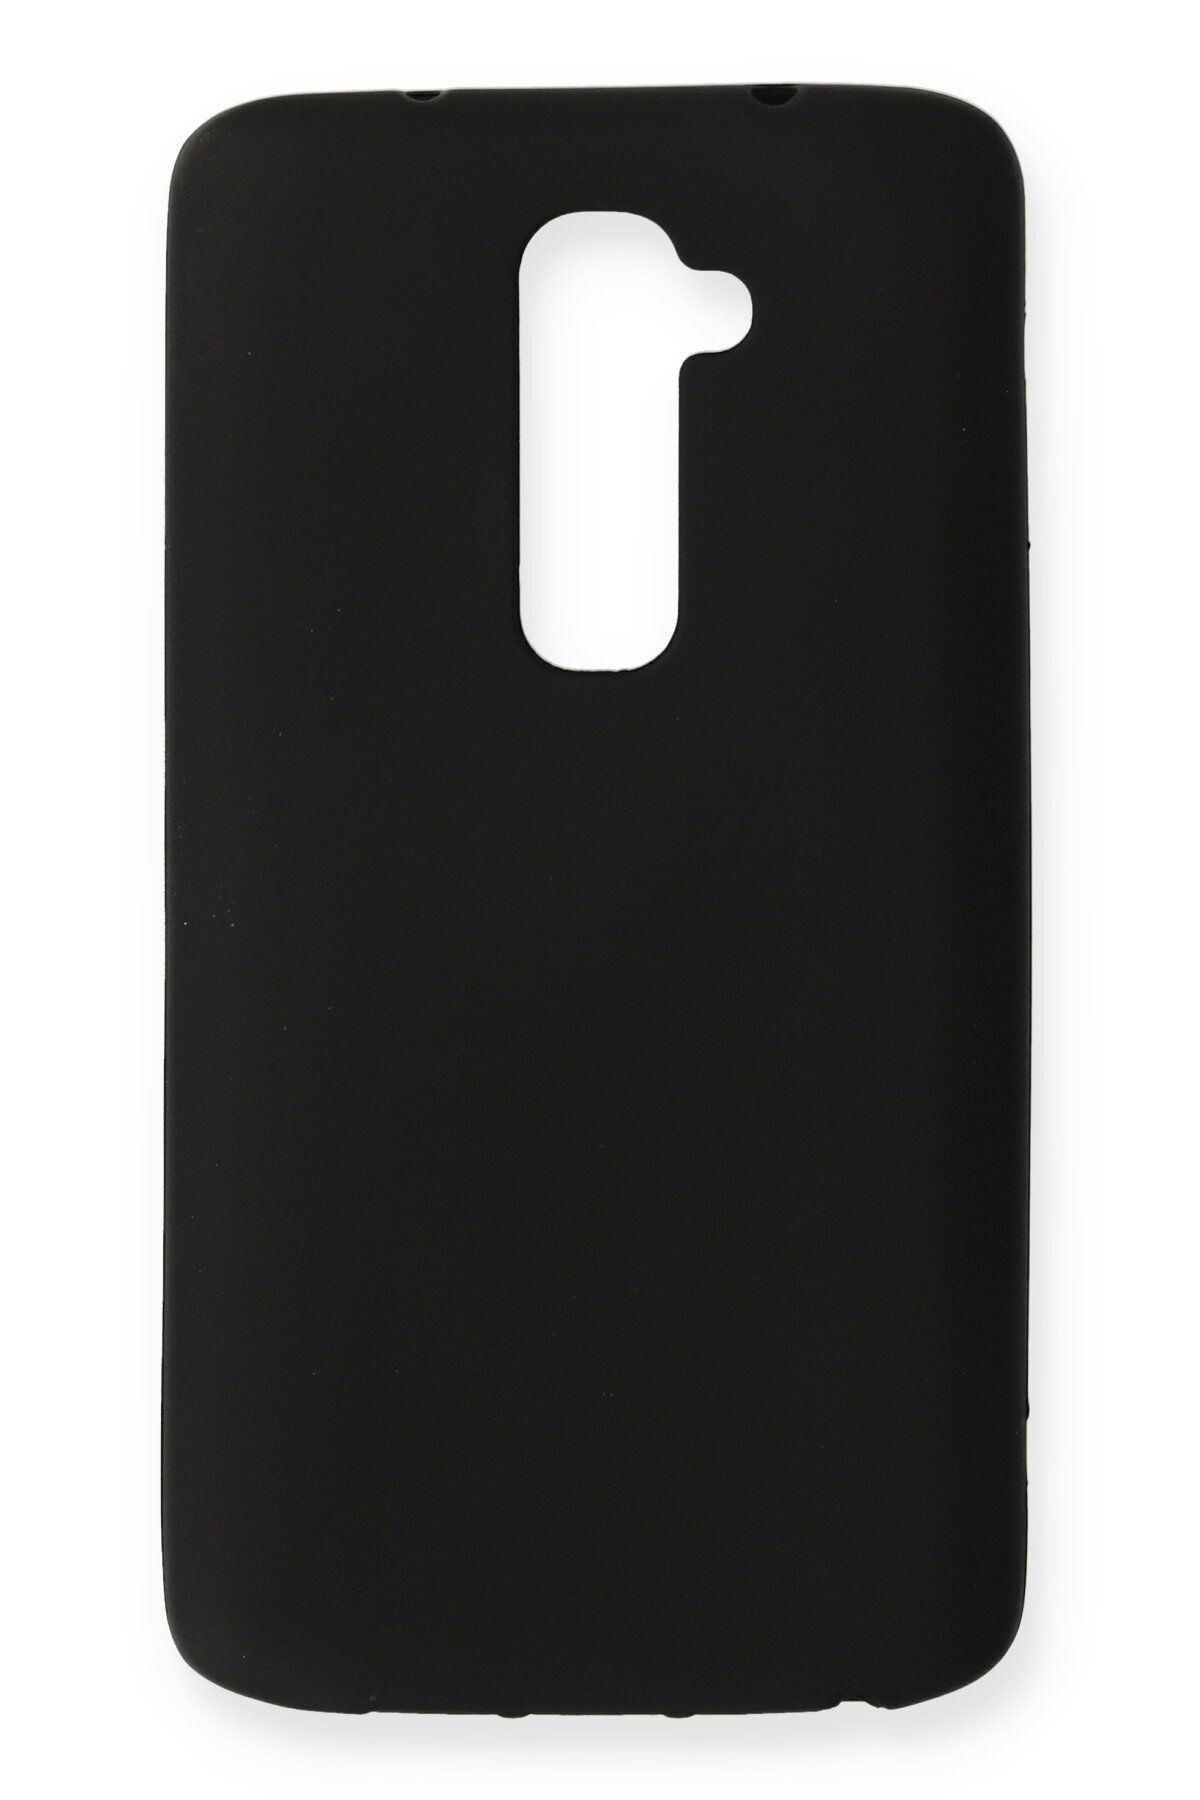 Maller Tech Newface LG G2 Kılıf First Silikon - Siyah